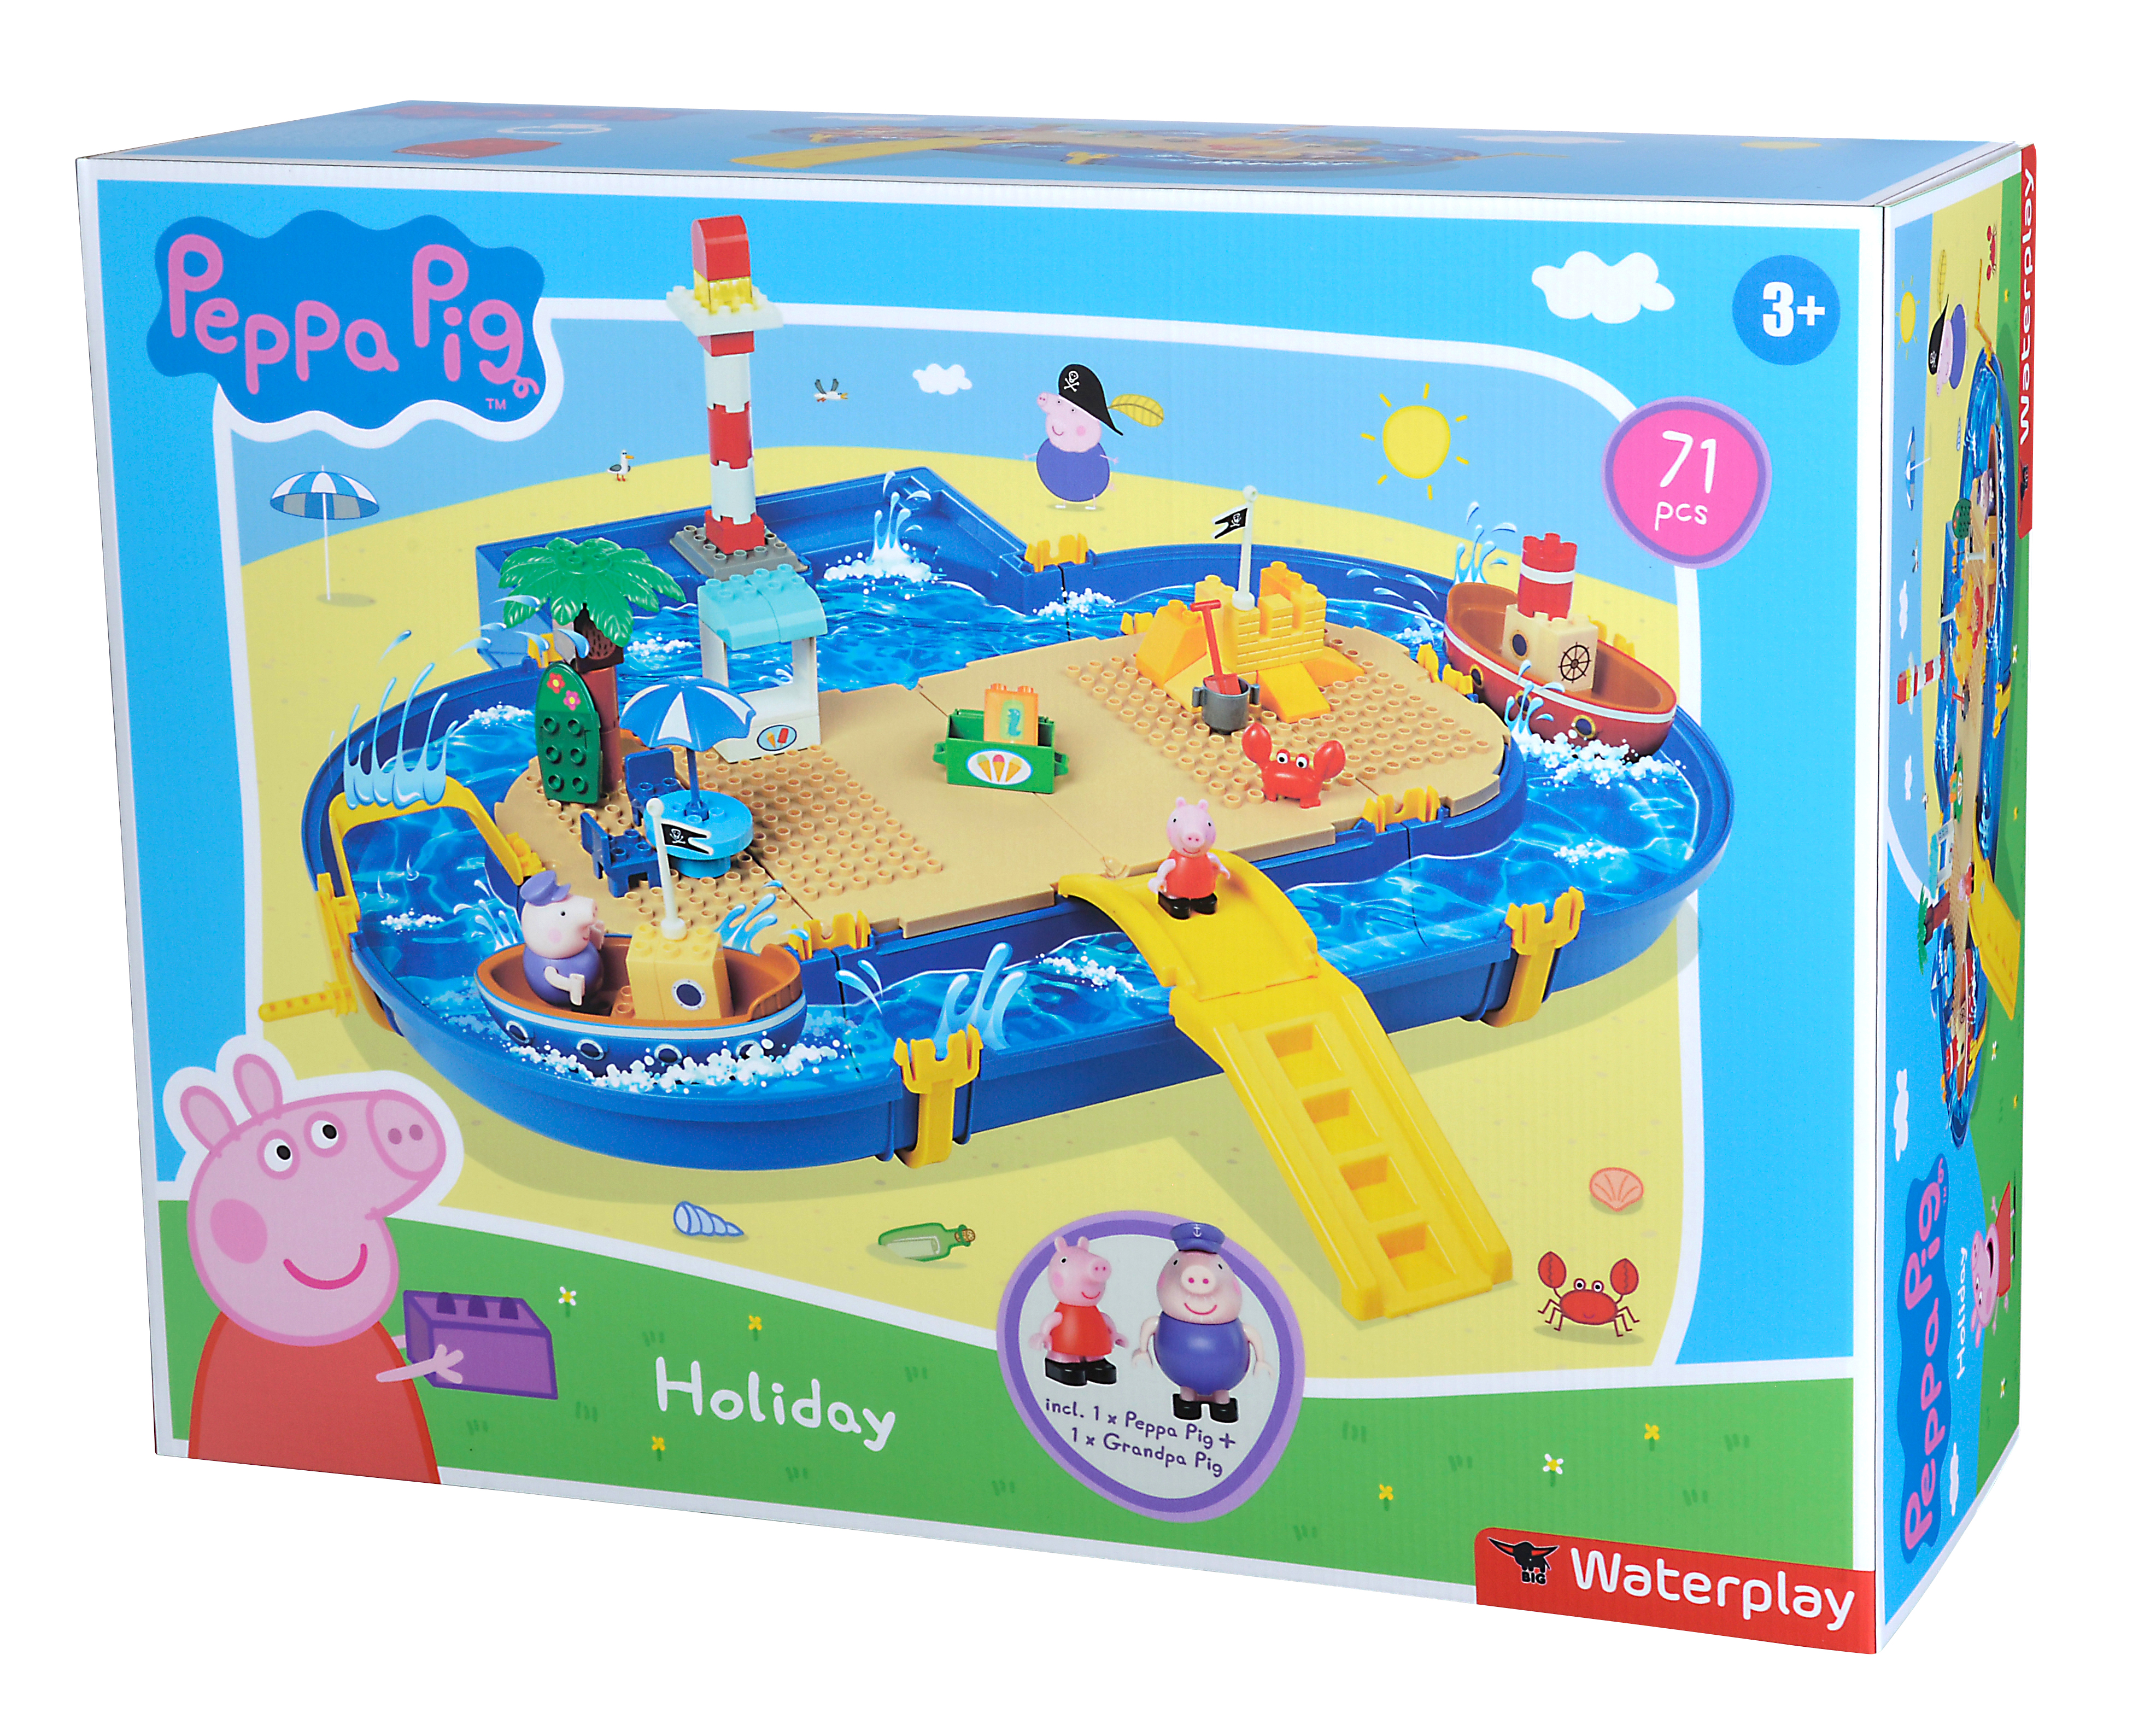 BIG Waterplay Peppa Wasserspielset Pig Holiday Blau